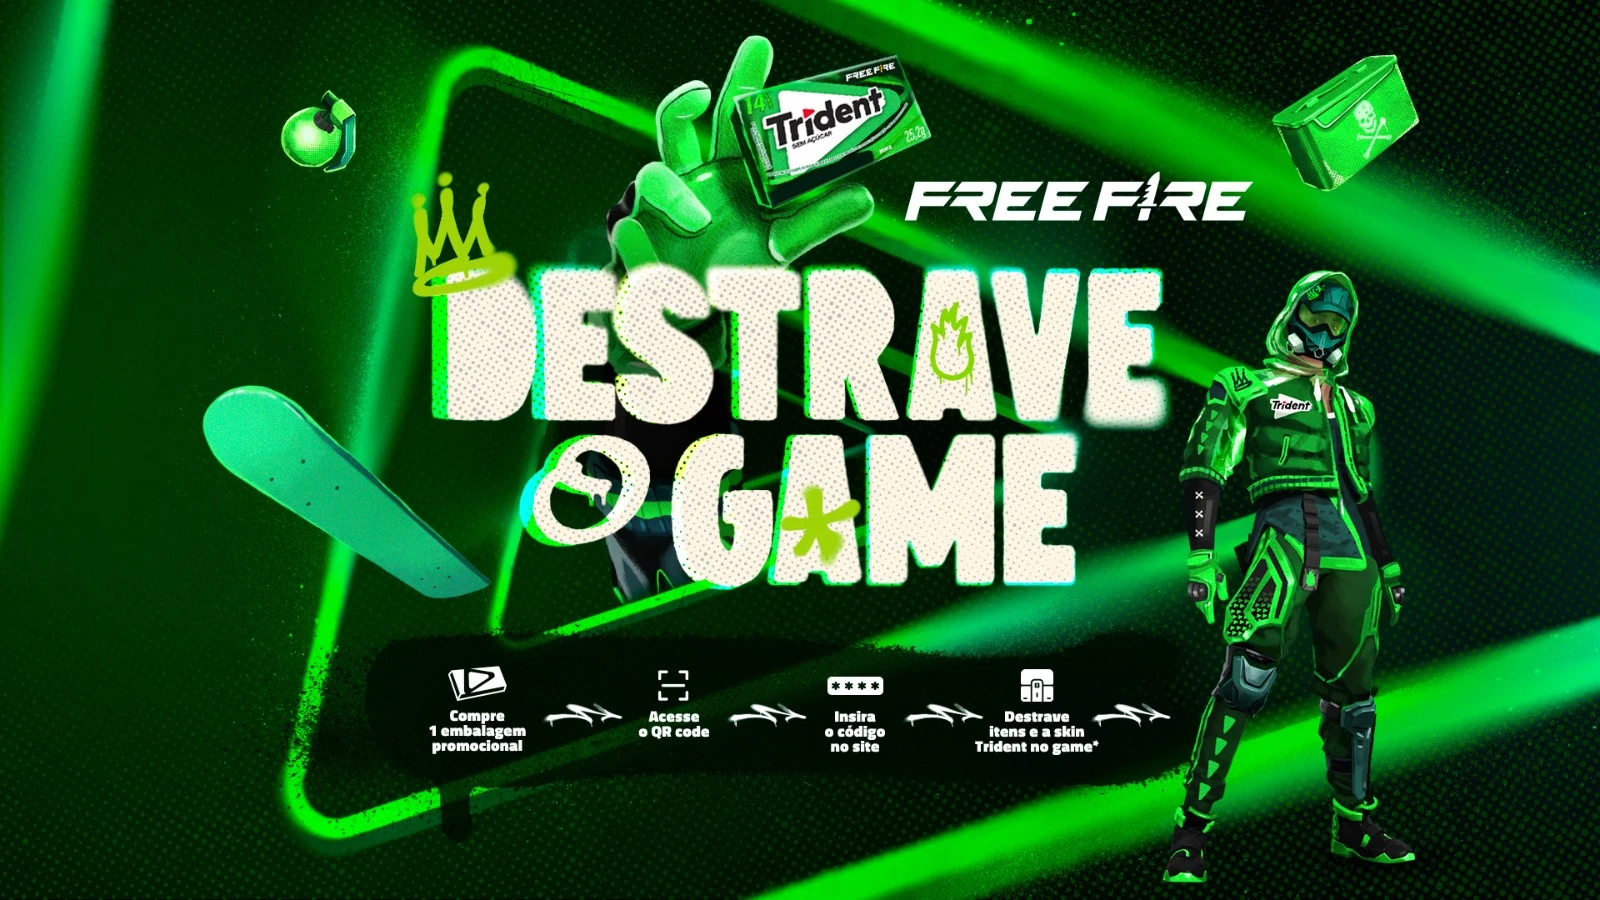 Trident y Free Fire lanzan la campaña exclusiva “Desbloquea el juego” con nuevos elementos en el juego